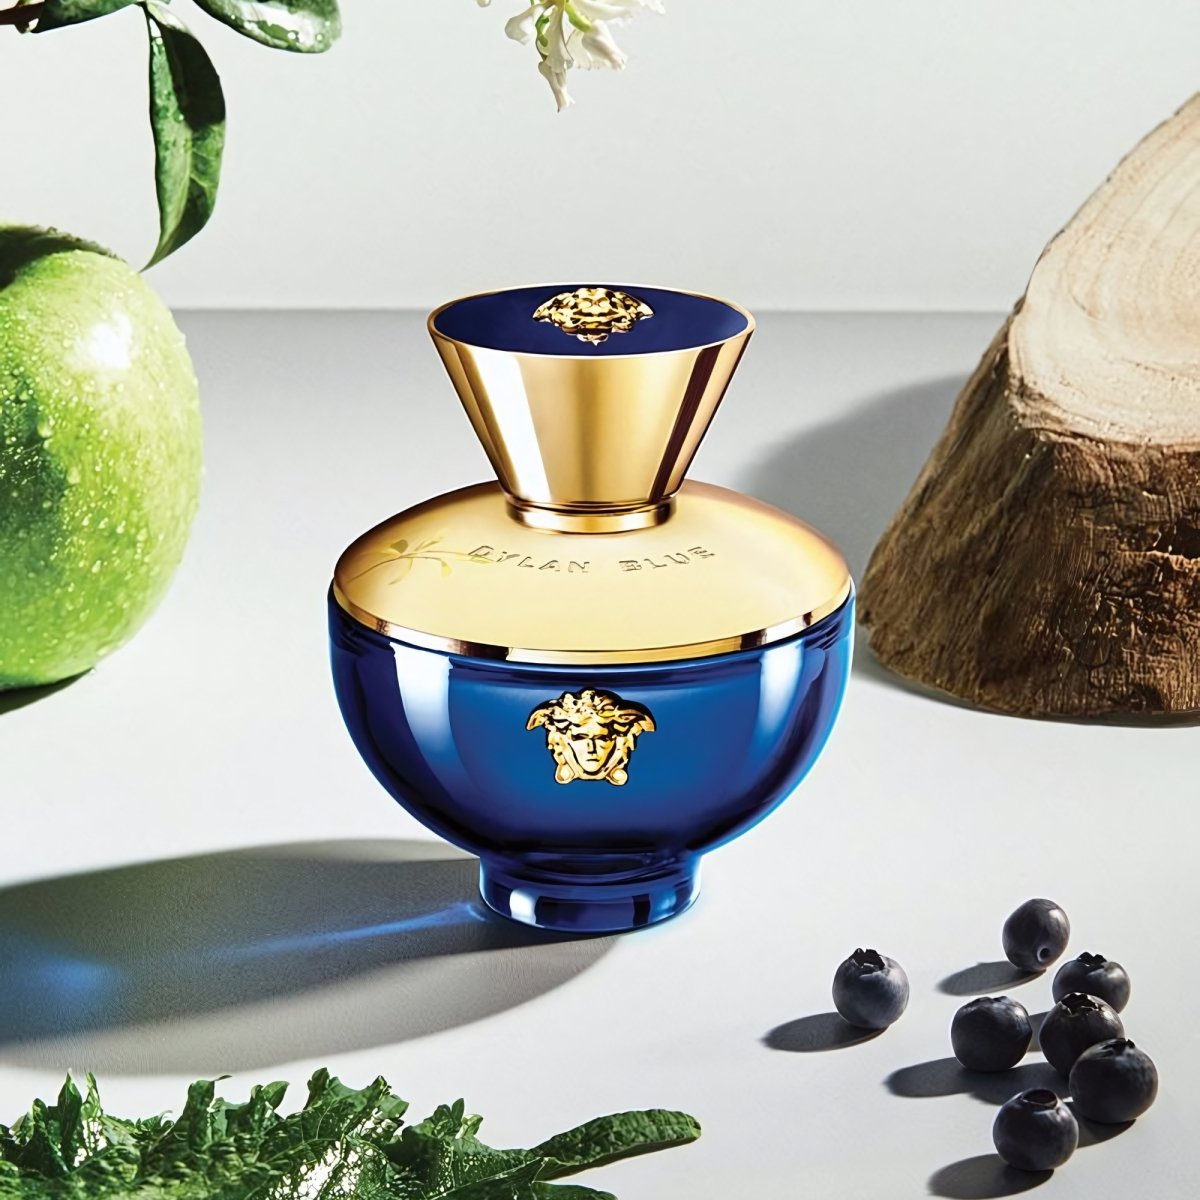 Versace Dylan Blue Pour Femme 3.4 oz Eau de Parfum Spray - Perfume Headquarters - Versace - 3.4 oz - Eau de Parfum - Fragrance - 8011003839117 - Fragrance